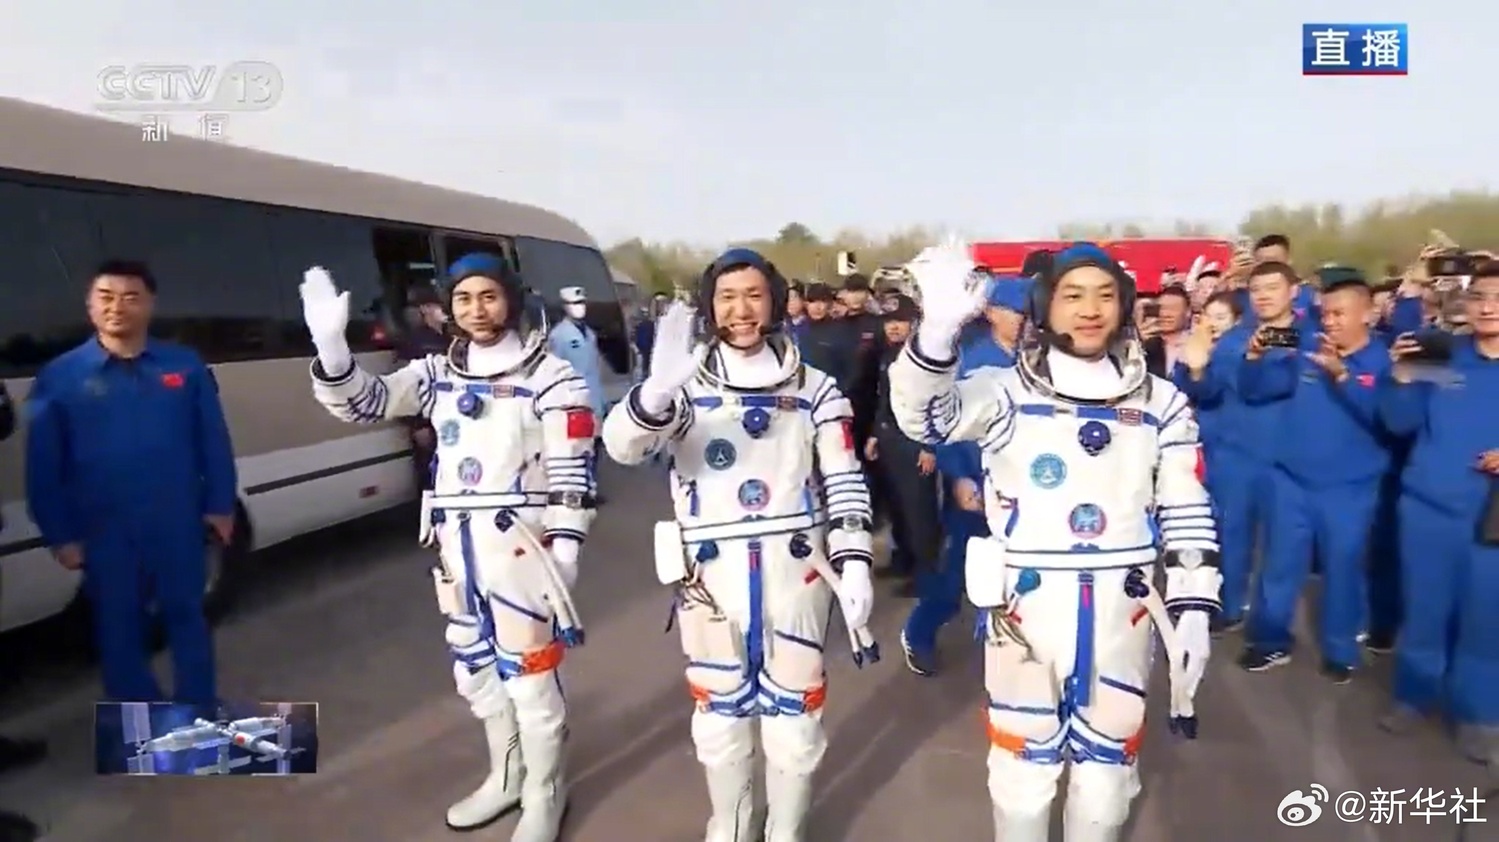 神舟十八號太空人出征儀式舉行  葉光富李聰李廣蘇領命出征